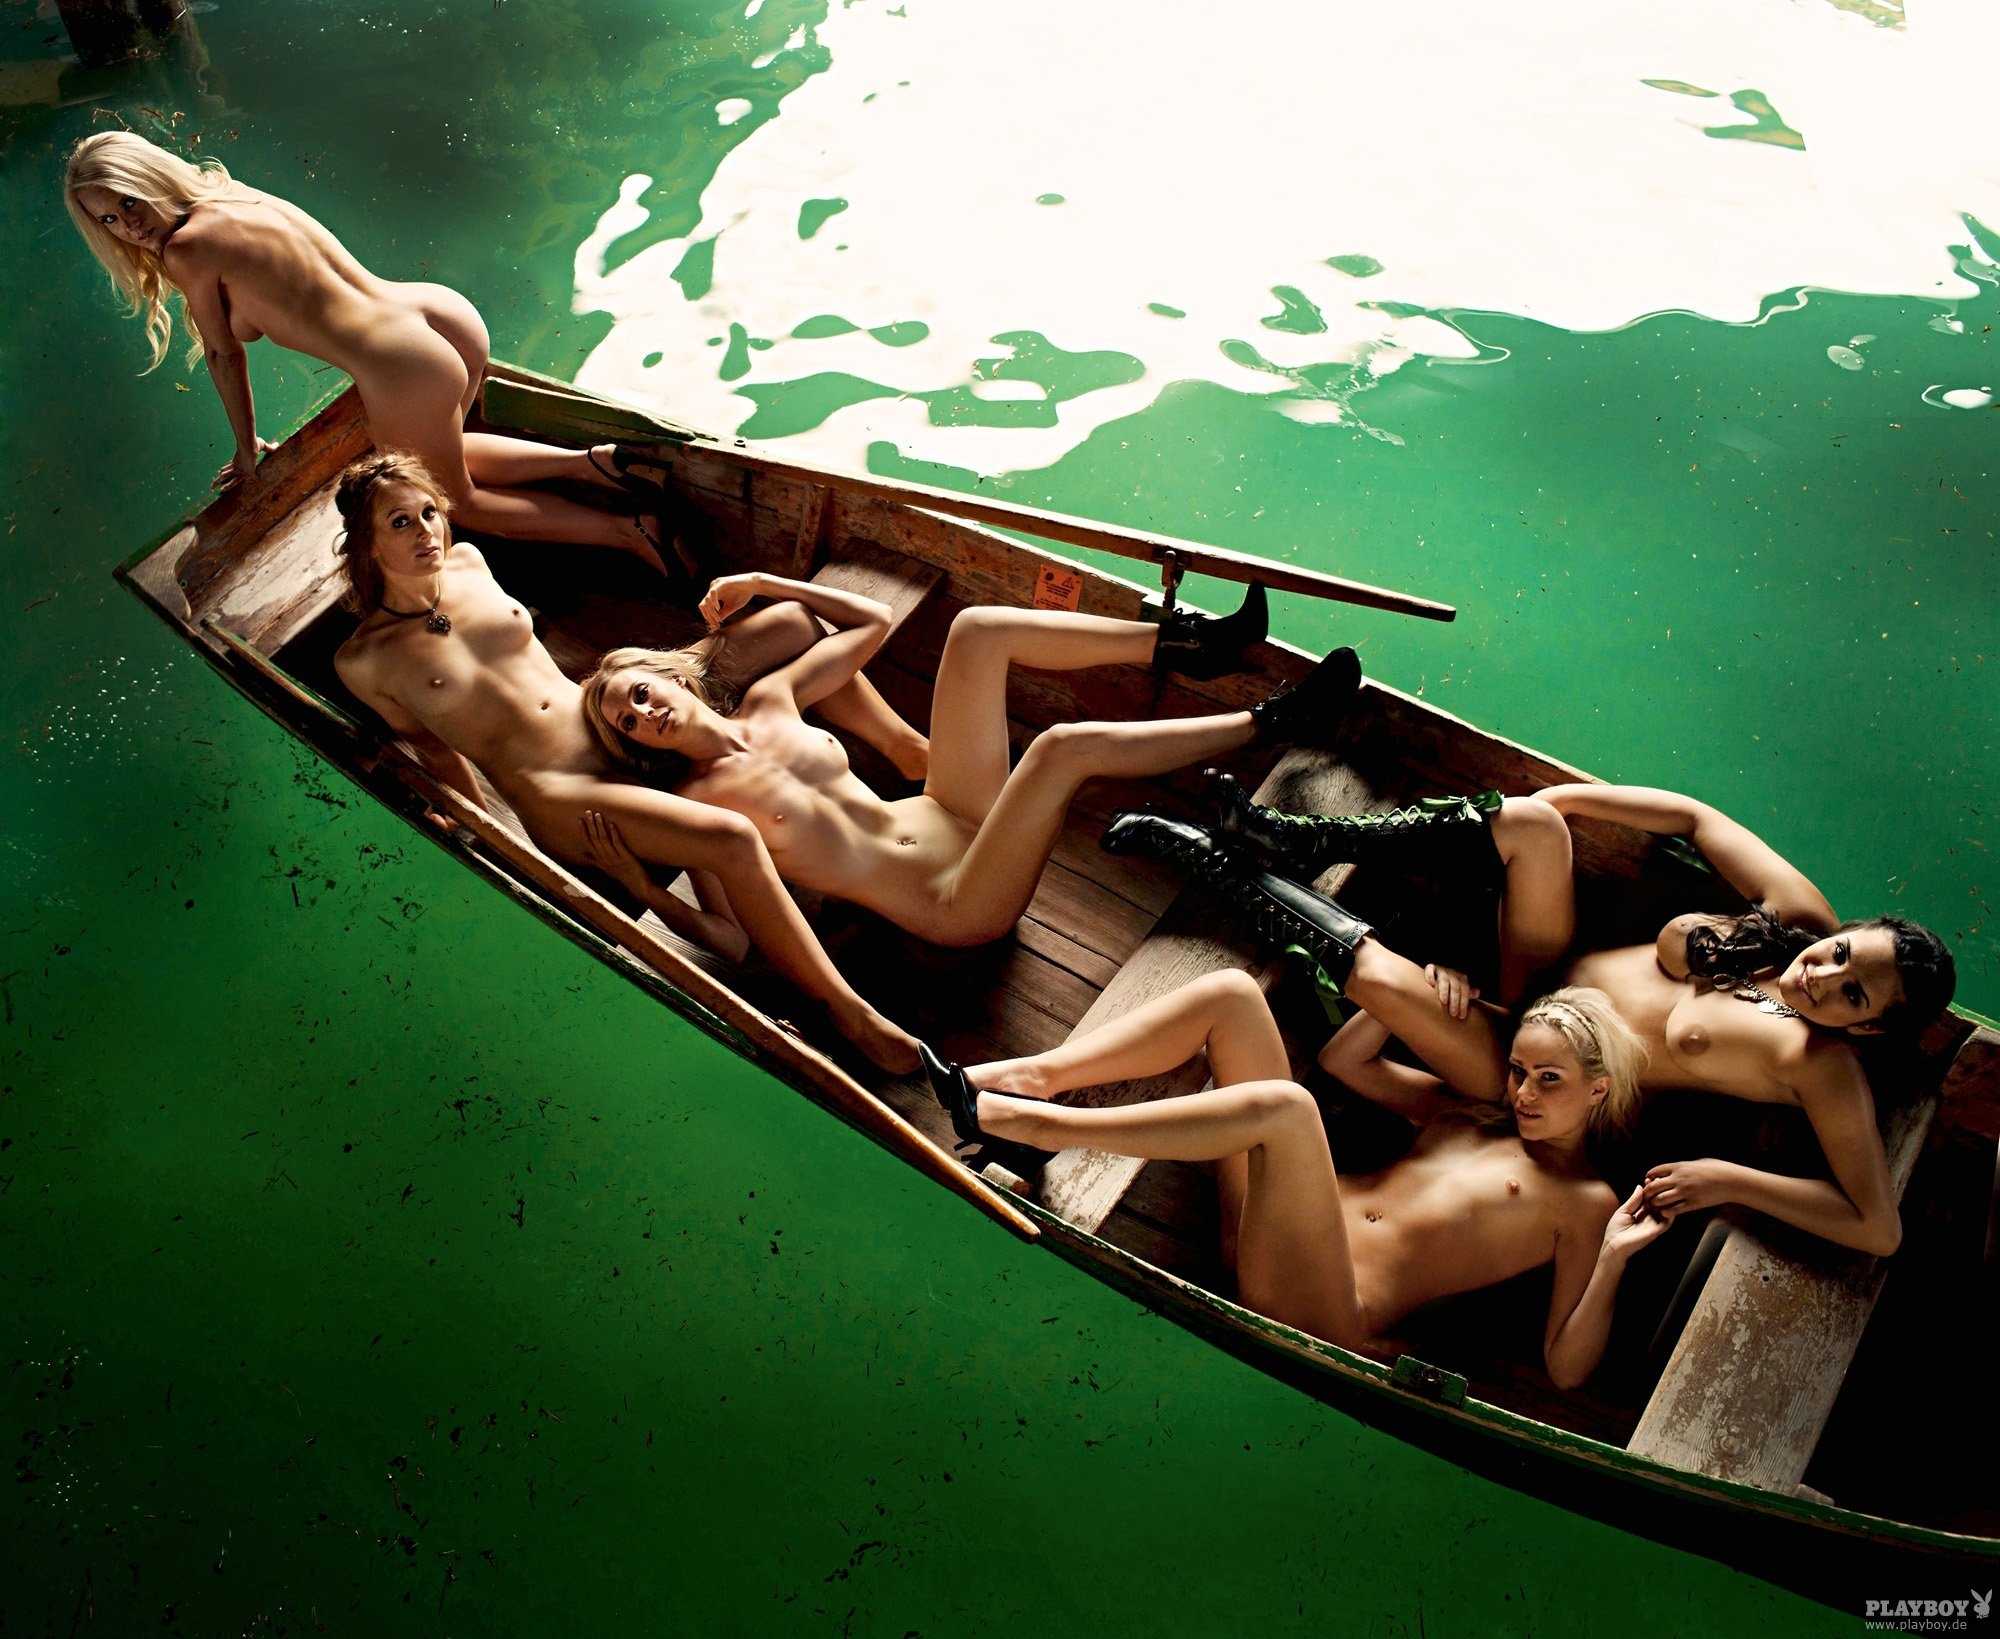 Голая девушка в лодке » Секс ххх фото голых русских девушек и женщин